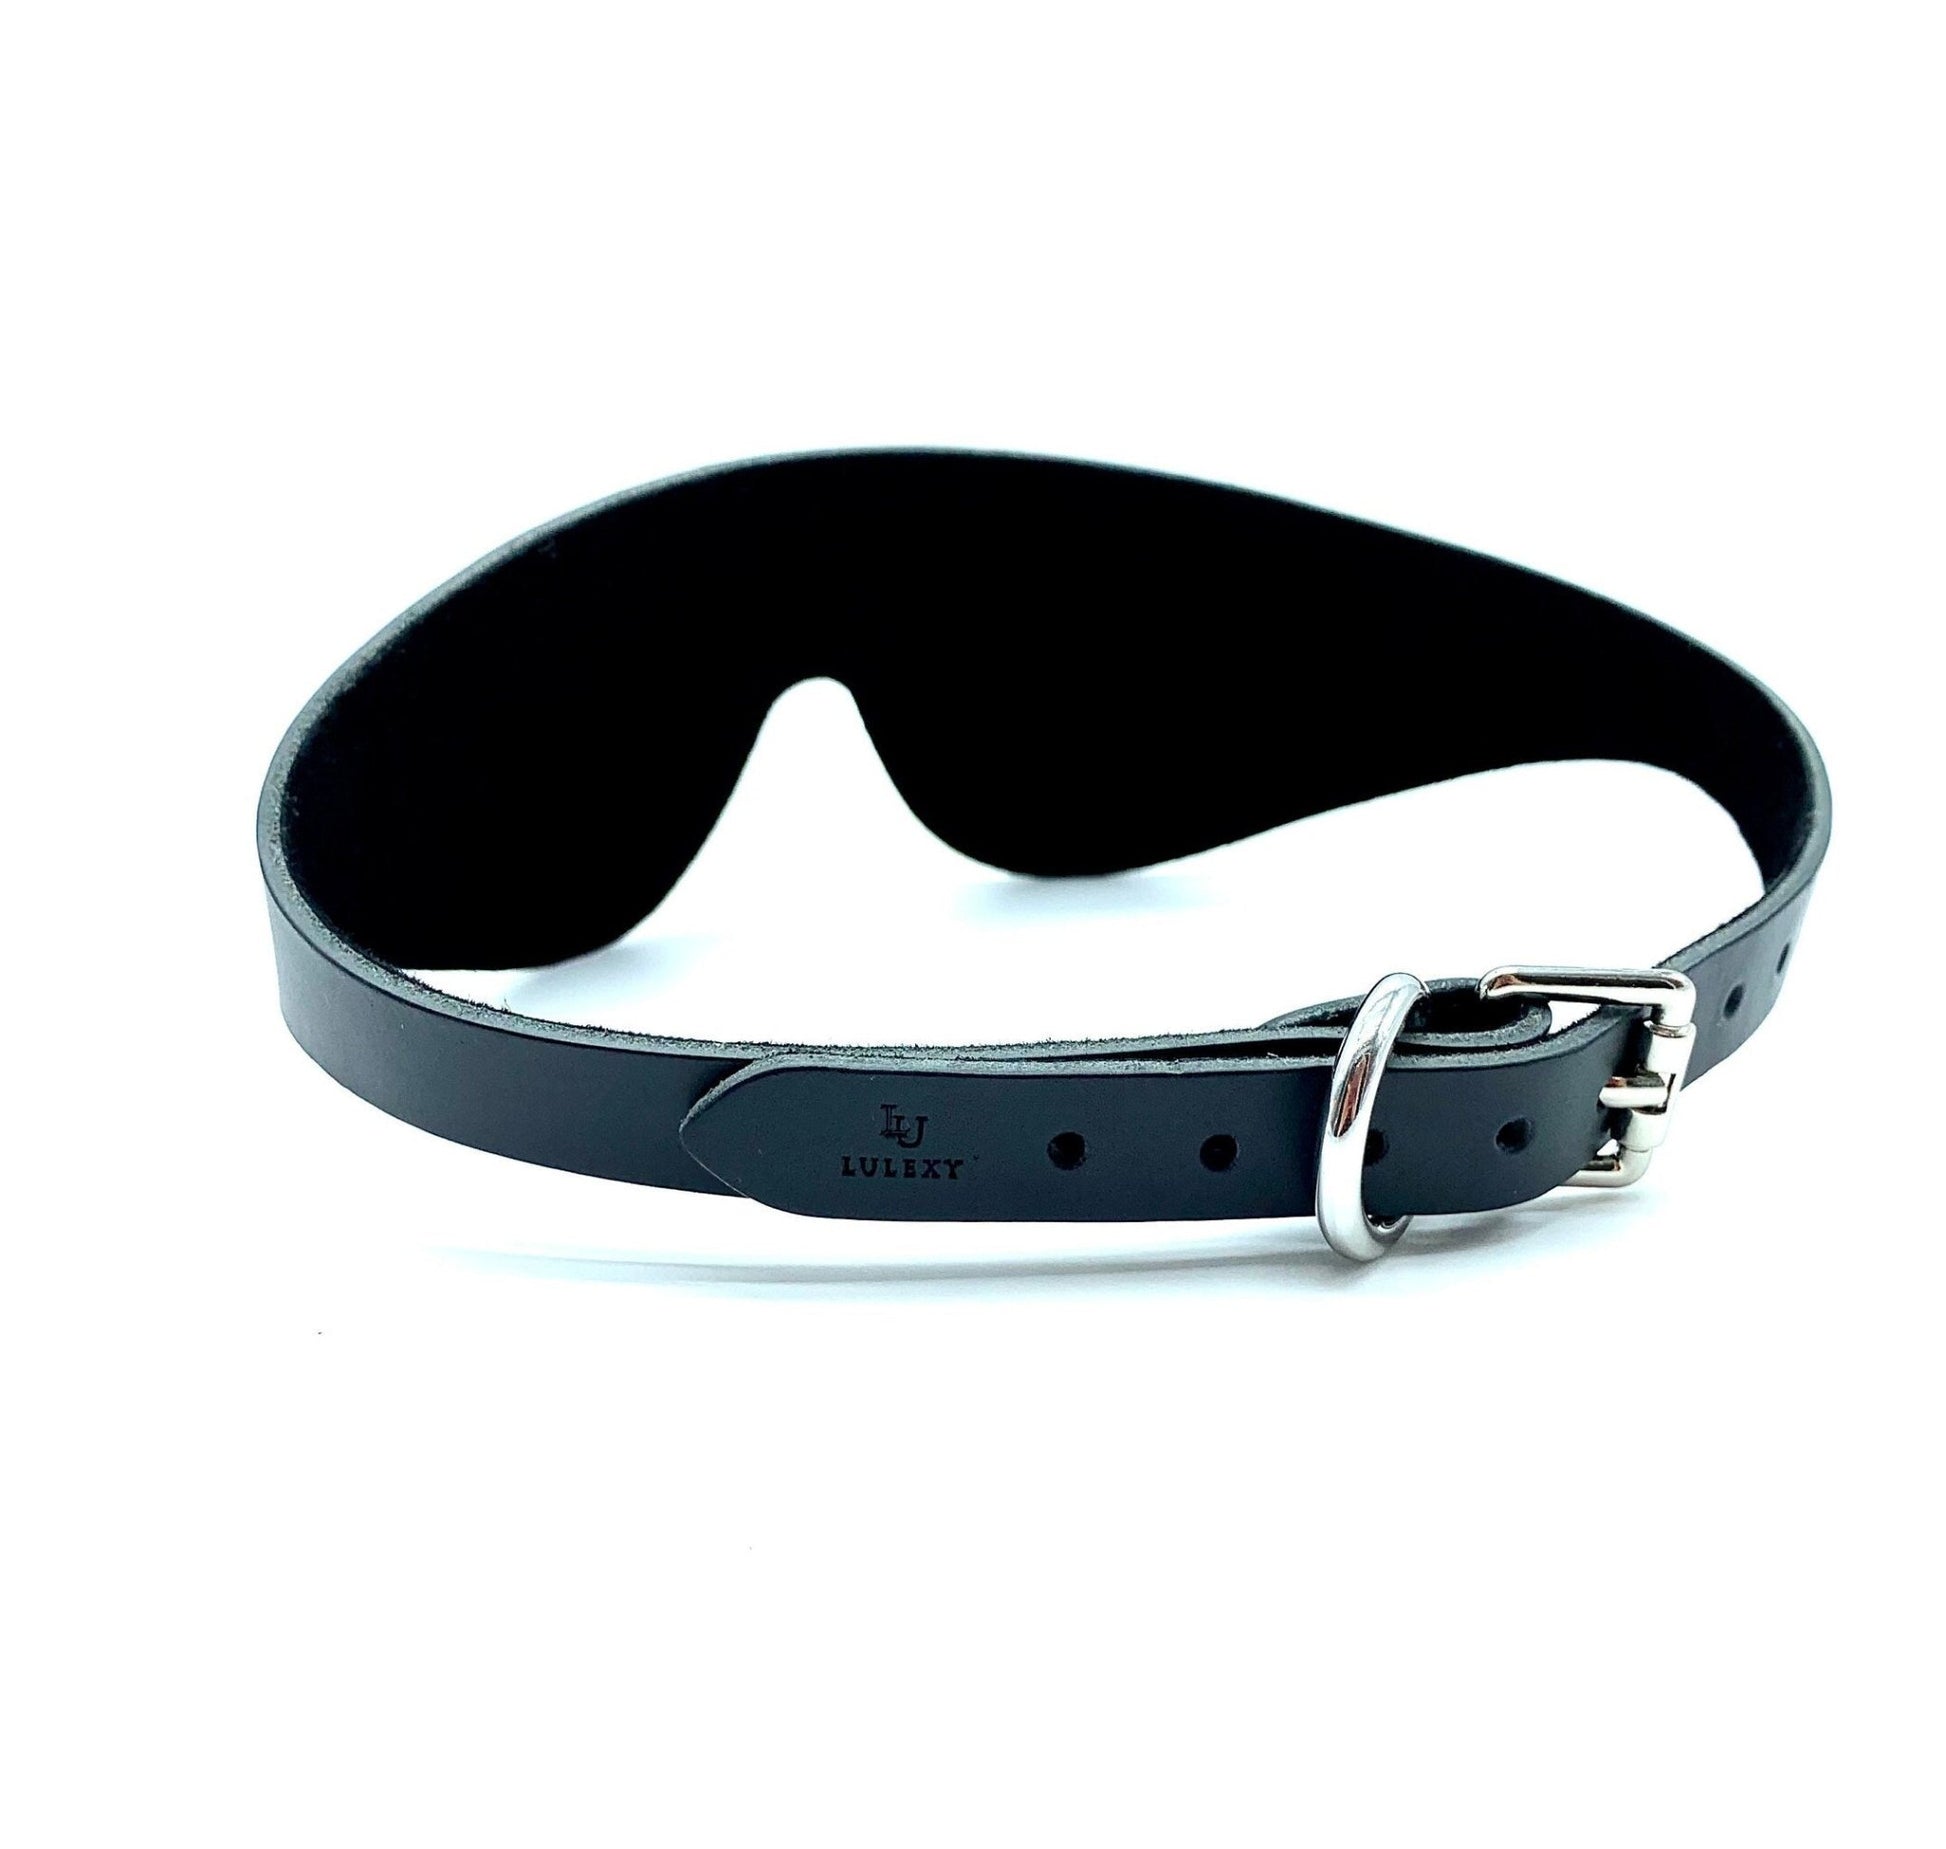 Eye Mask "Mona", Black Leather BDSM Blindfold, No Stitching - Lulexy